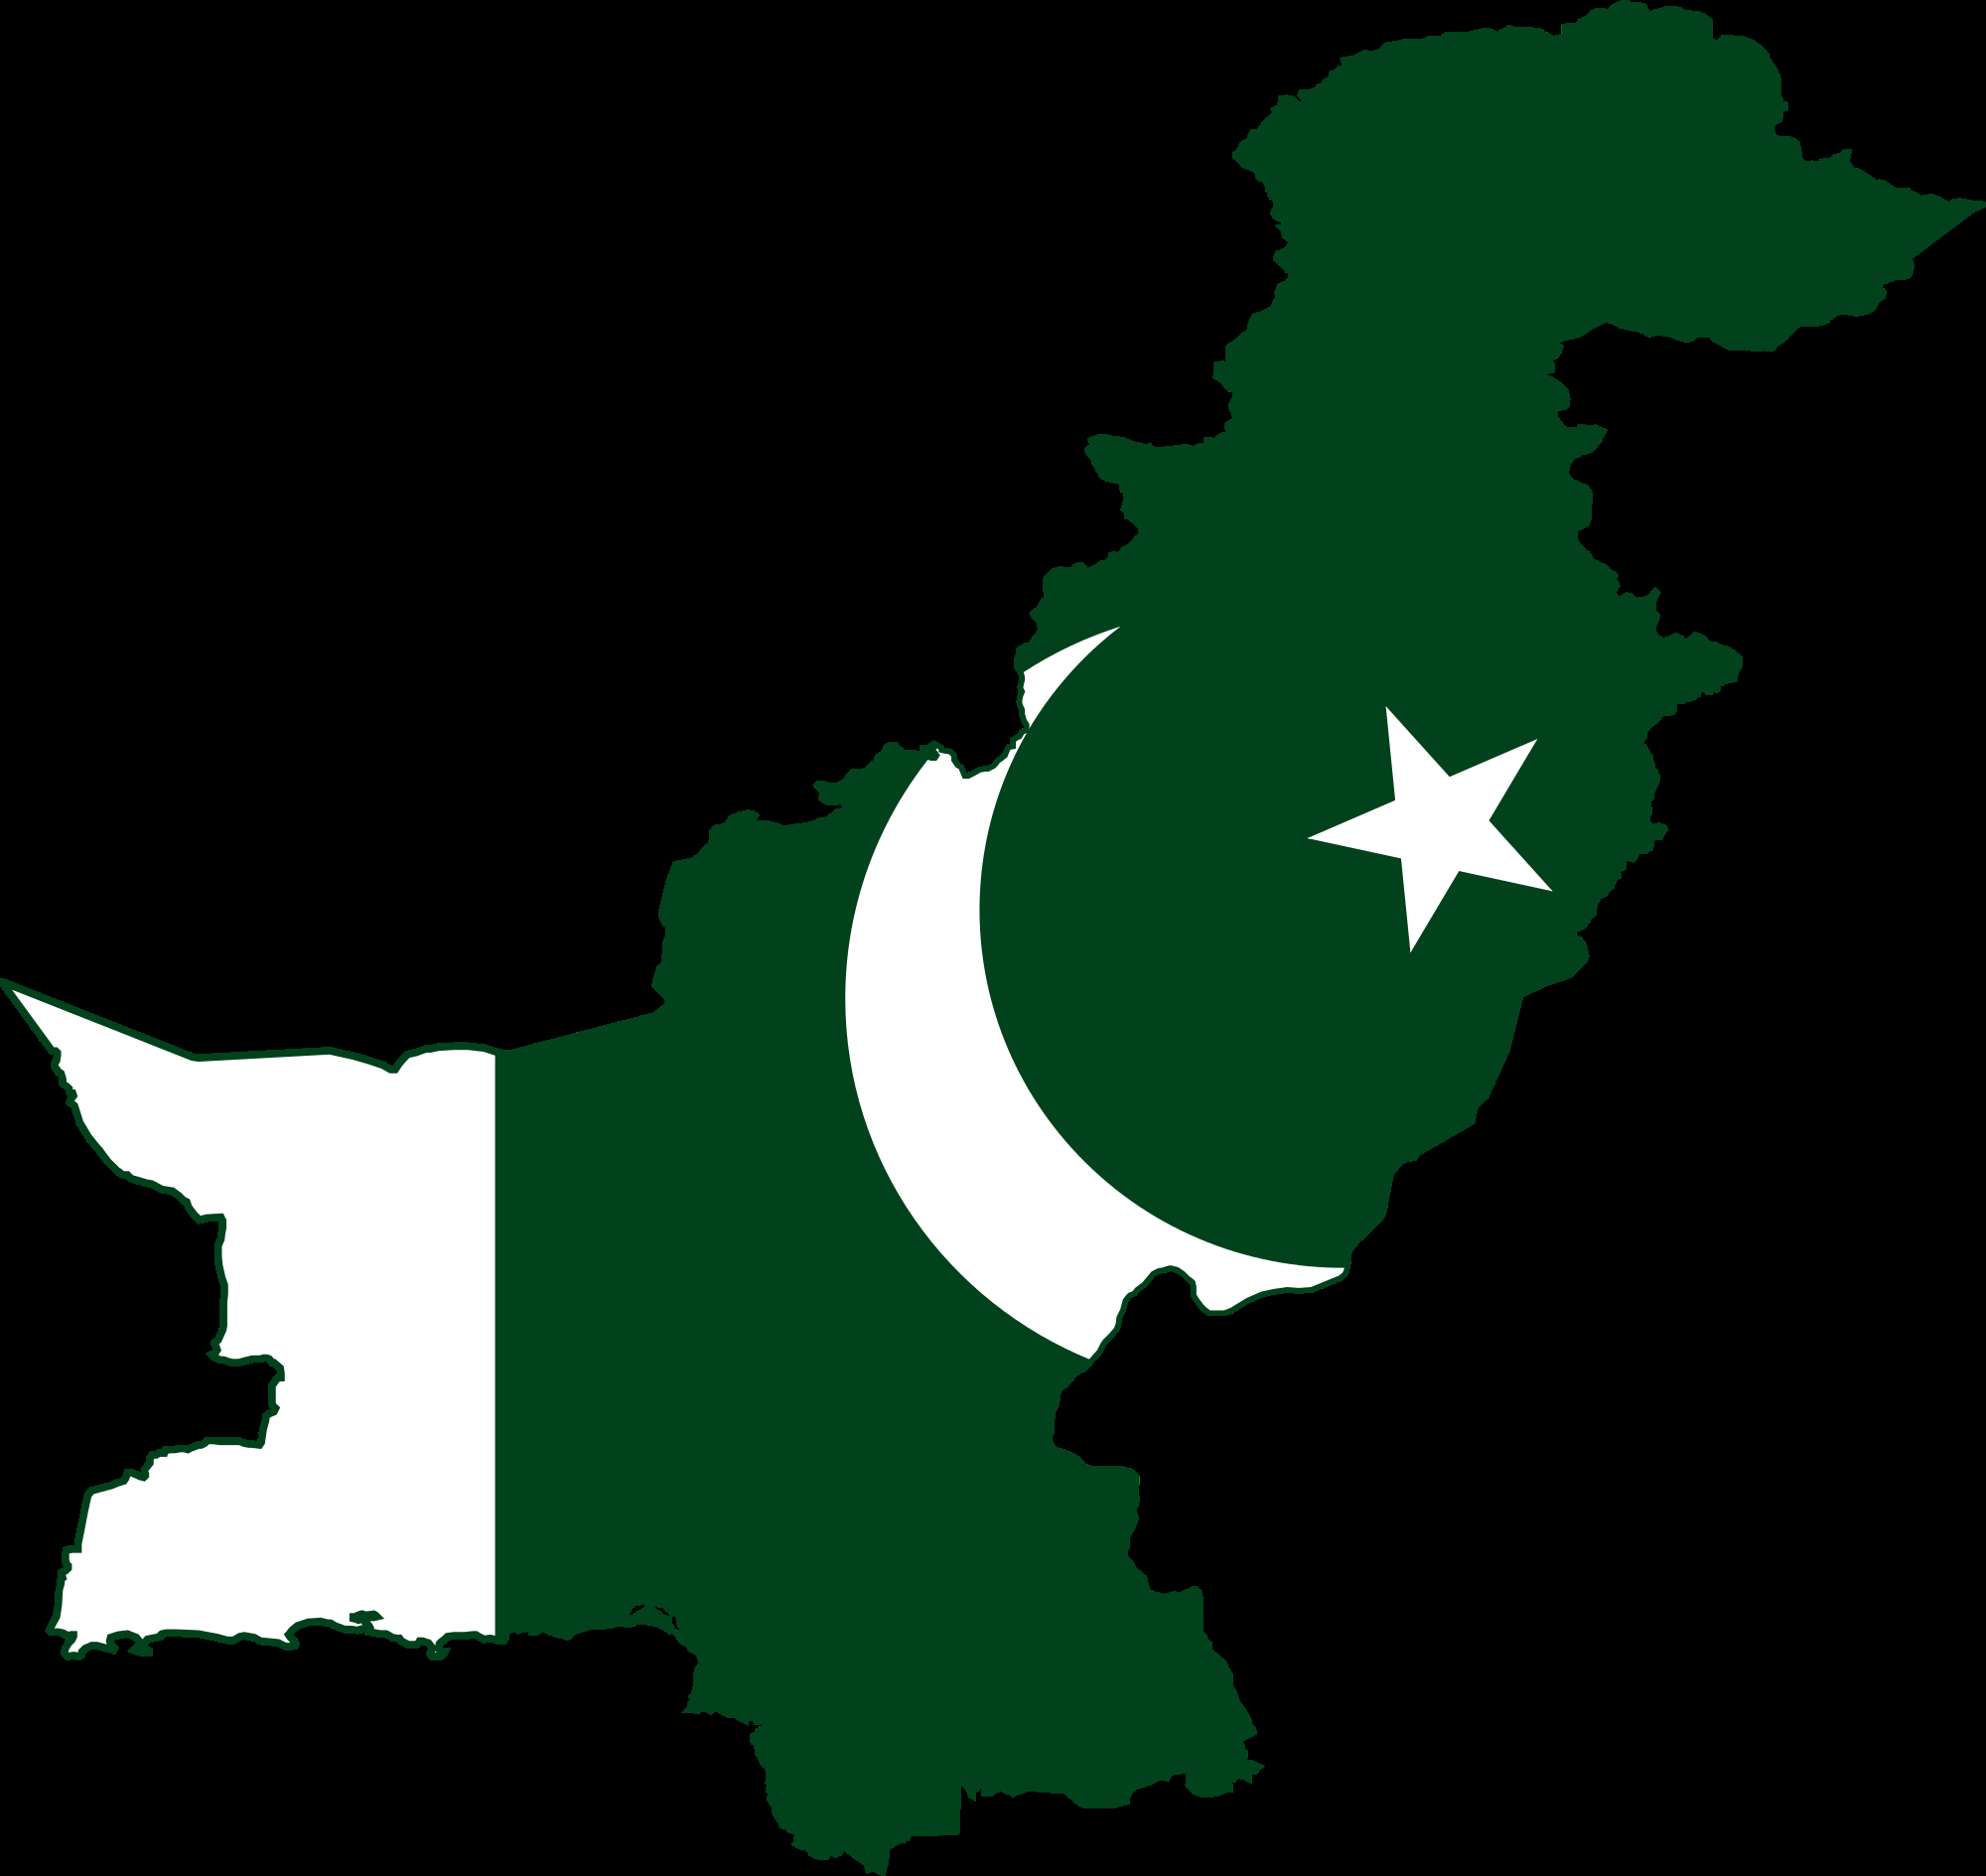 भारतीय सैनिकले आफ्ना चार सैनिकको हत्या गरेको पाकिस्तानको आरोप